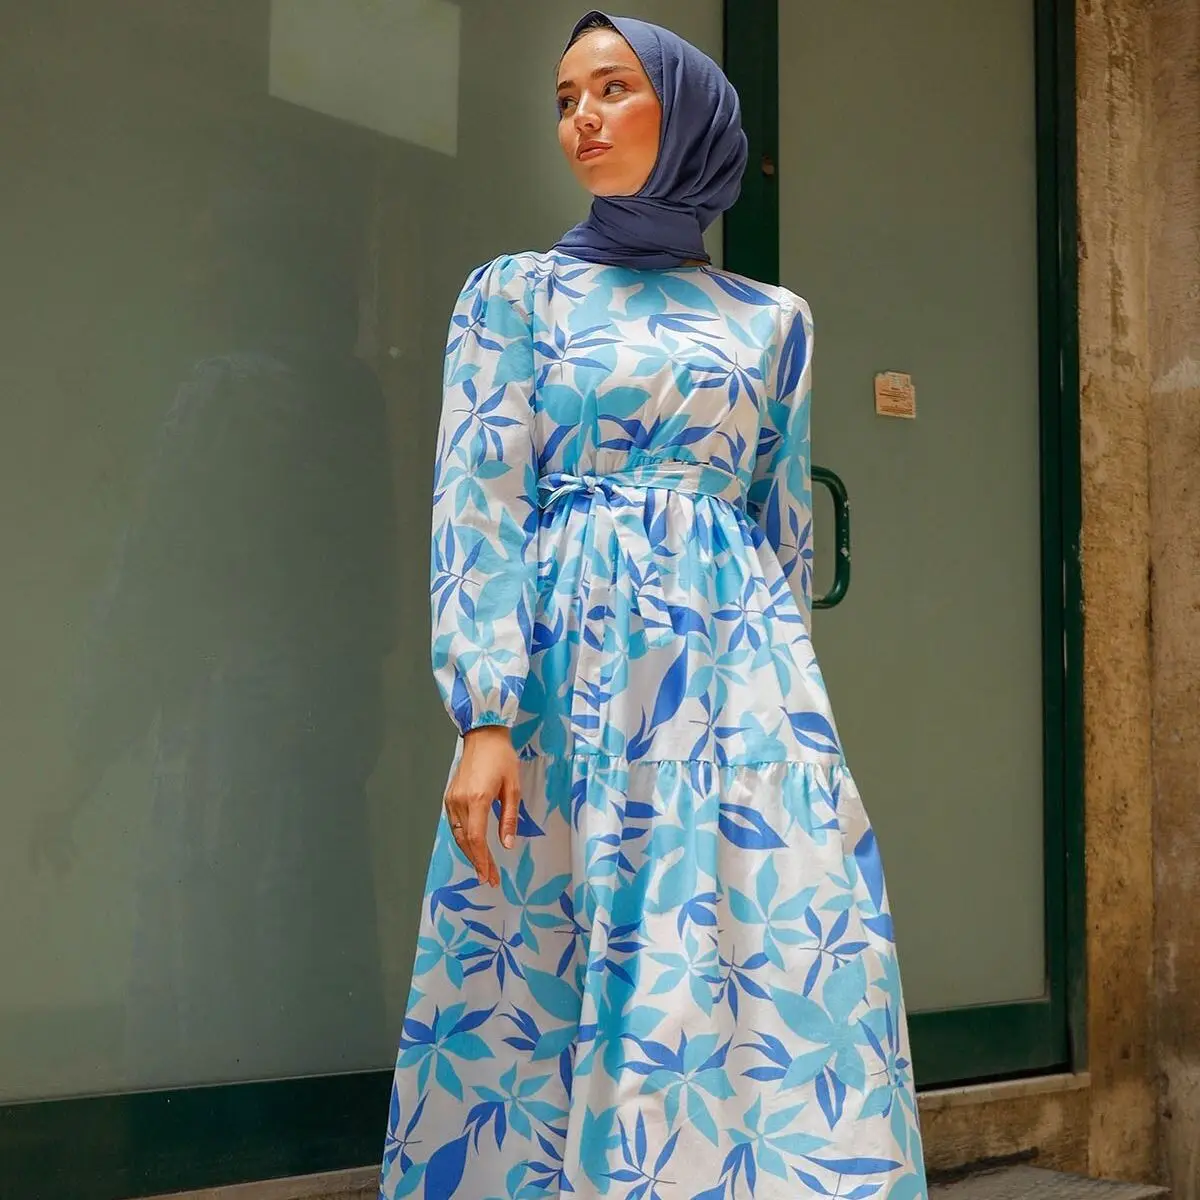 Красочное платье принцессы с листьями на плечо, индейка, мусульманская мода, хиджаб, мусульманская одежда Дубай, Эксклюзив 2021